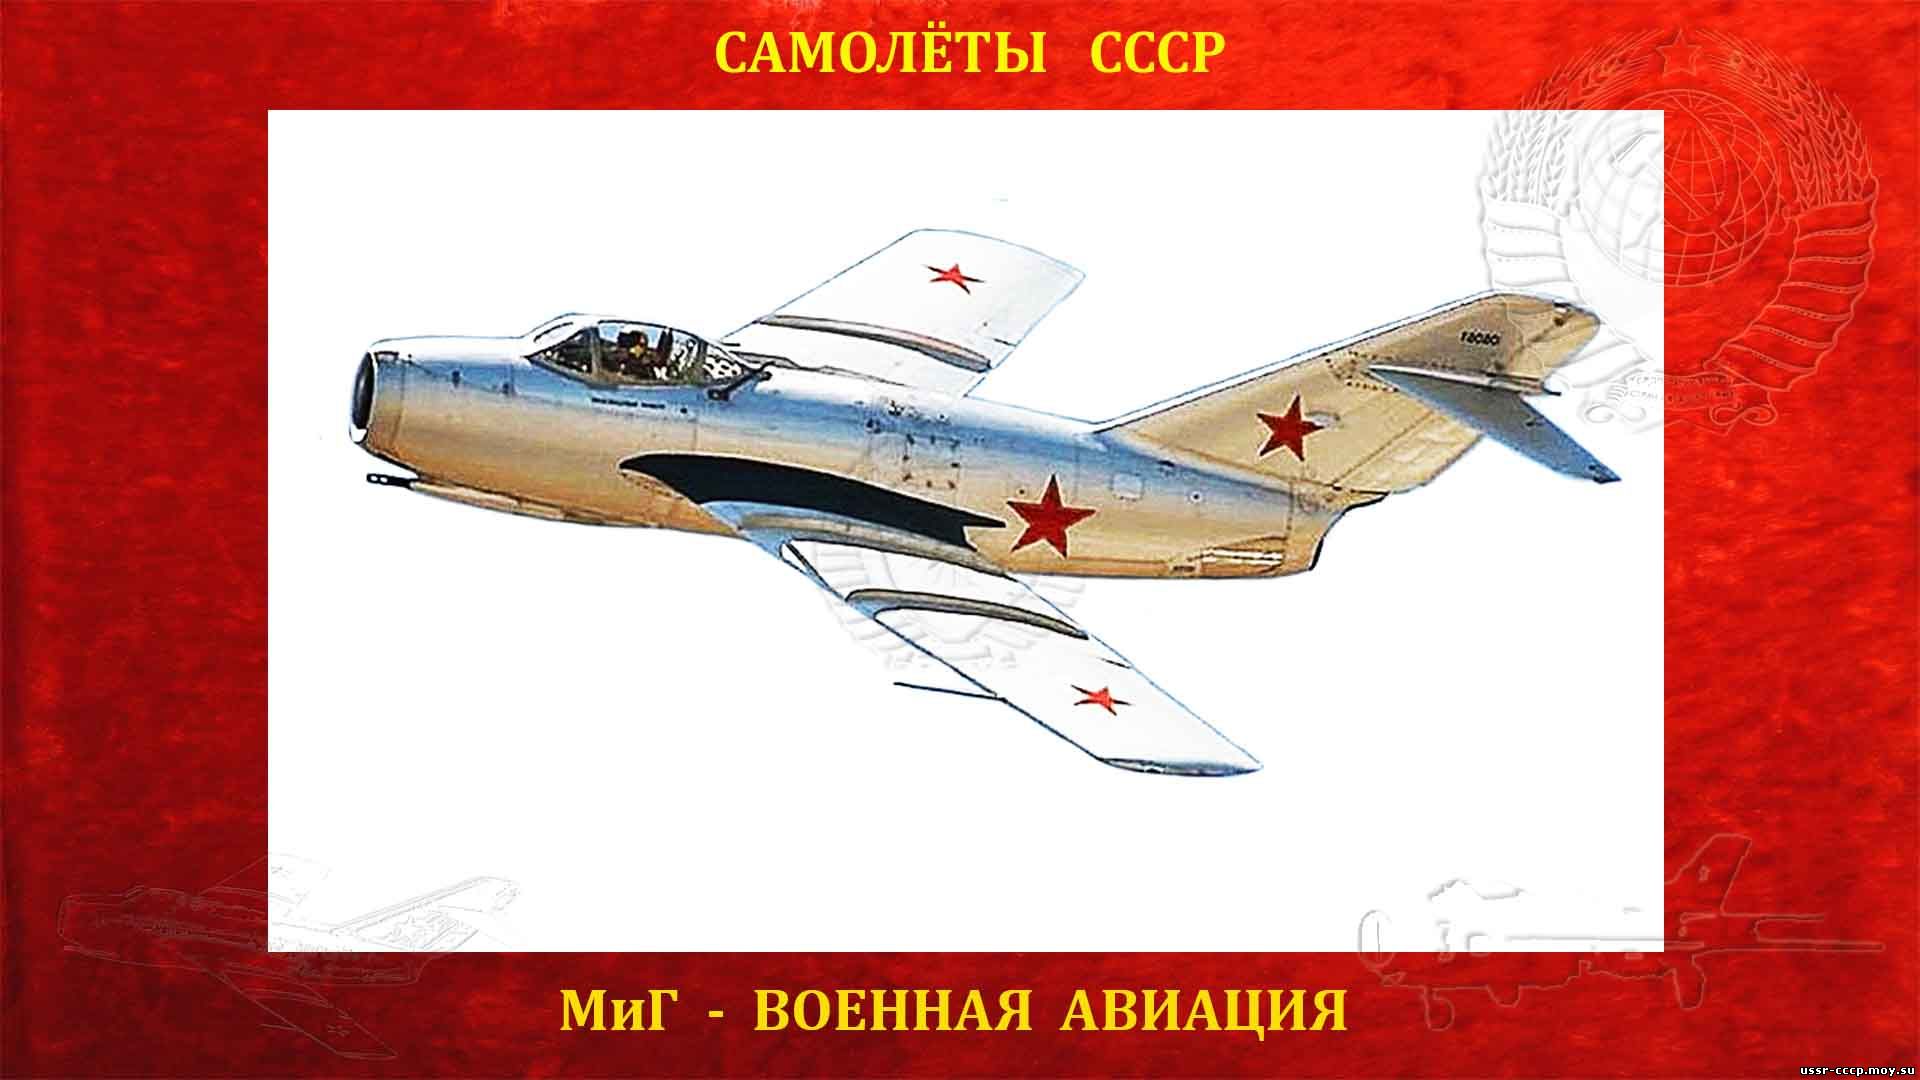 МиГ-15 (повествование)